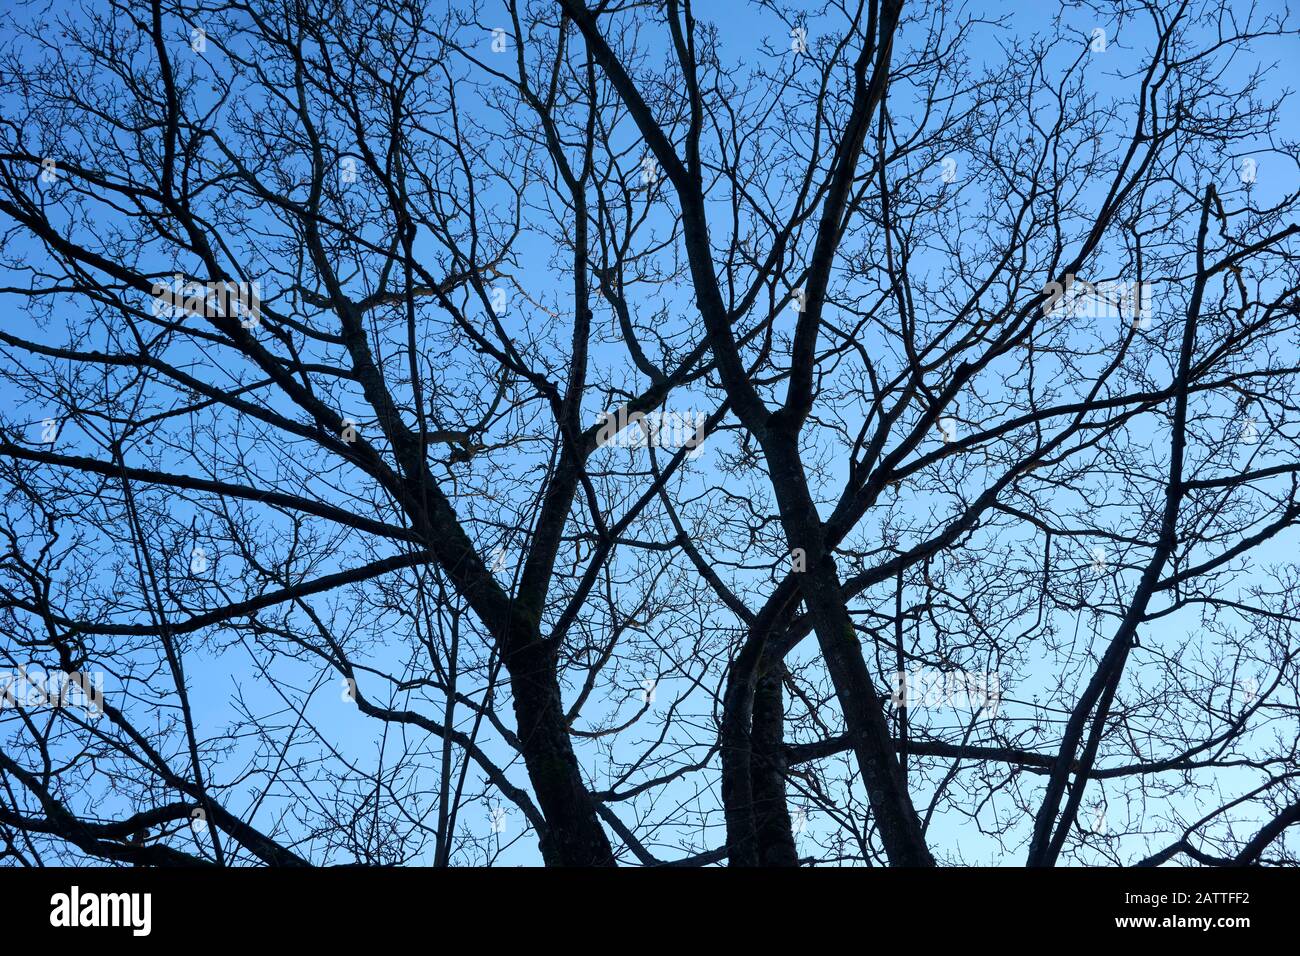 Branches d'arbres à feuilles caduques nues silhouetted contre un ciel bleu en hiver Banque D'Images